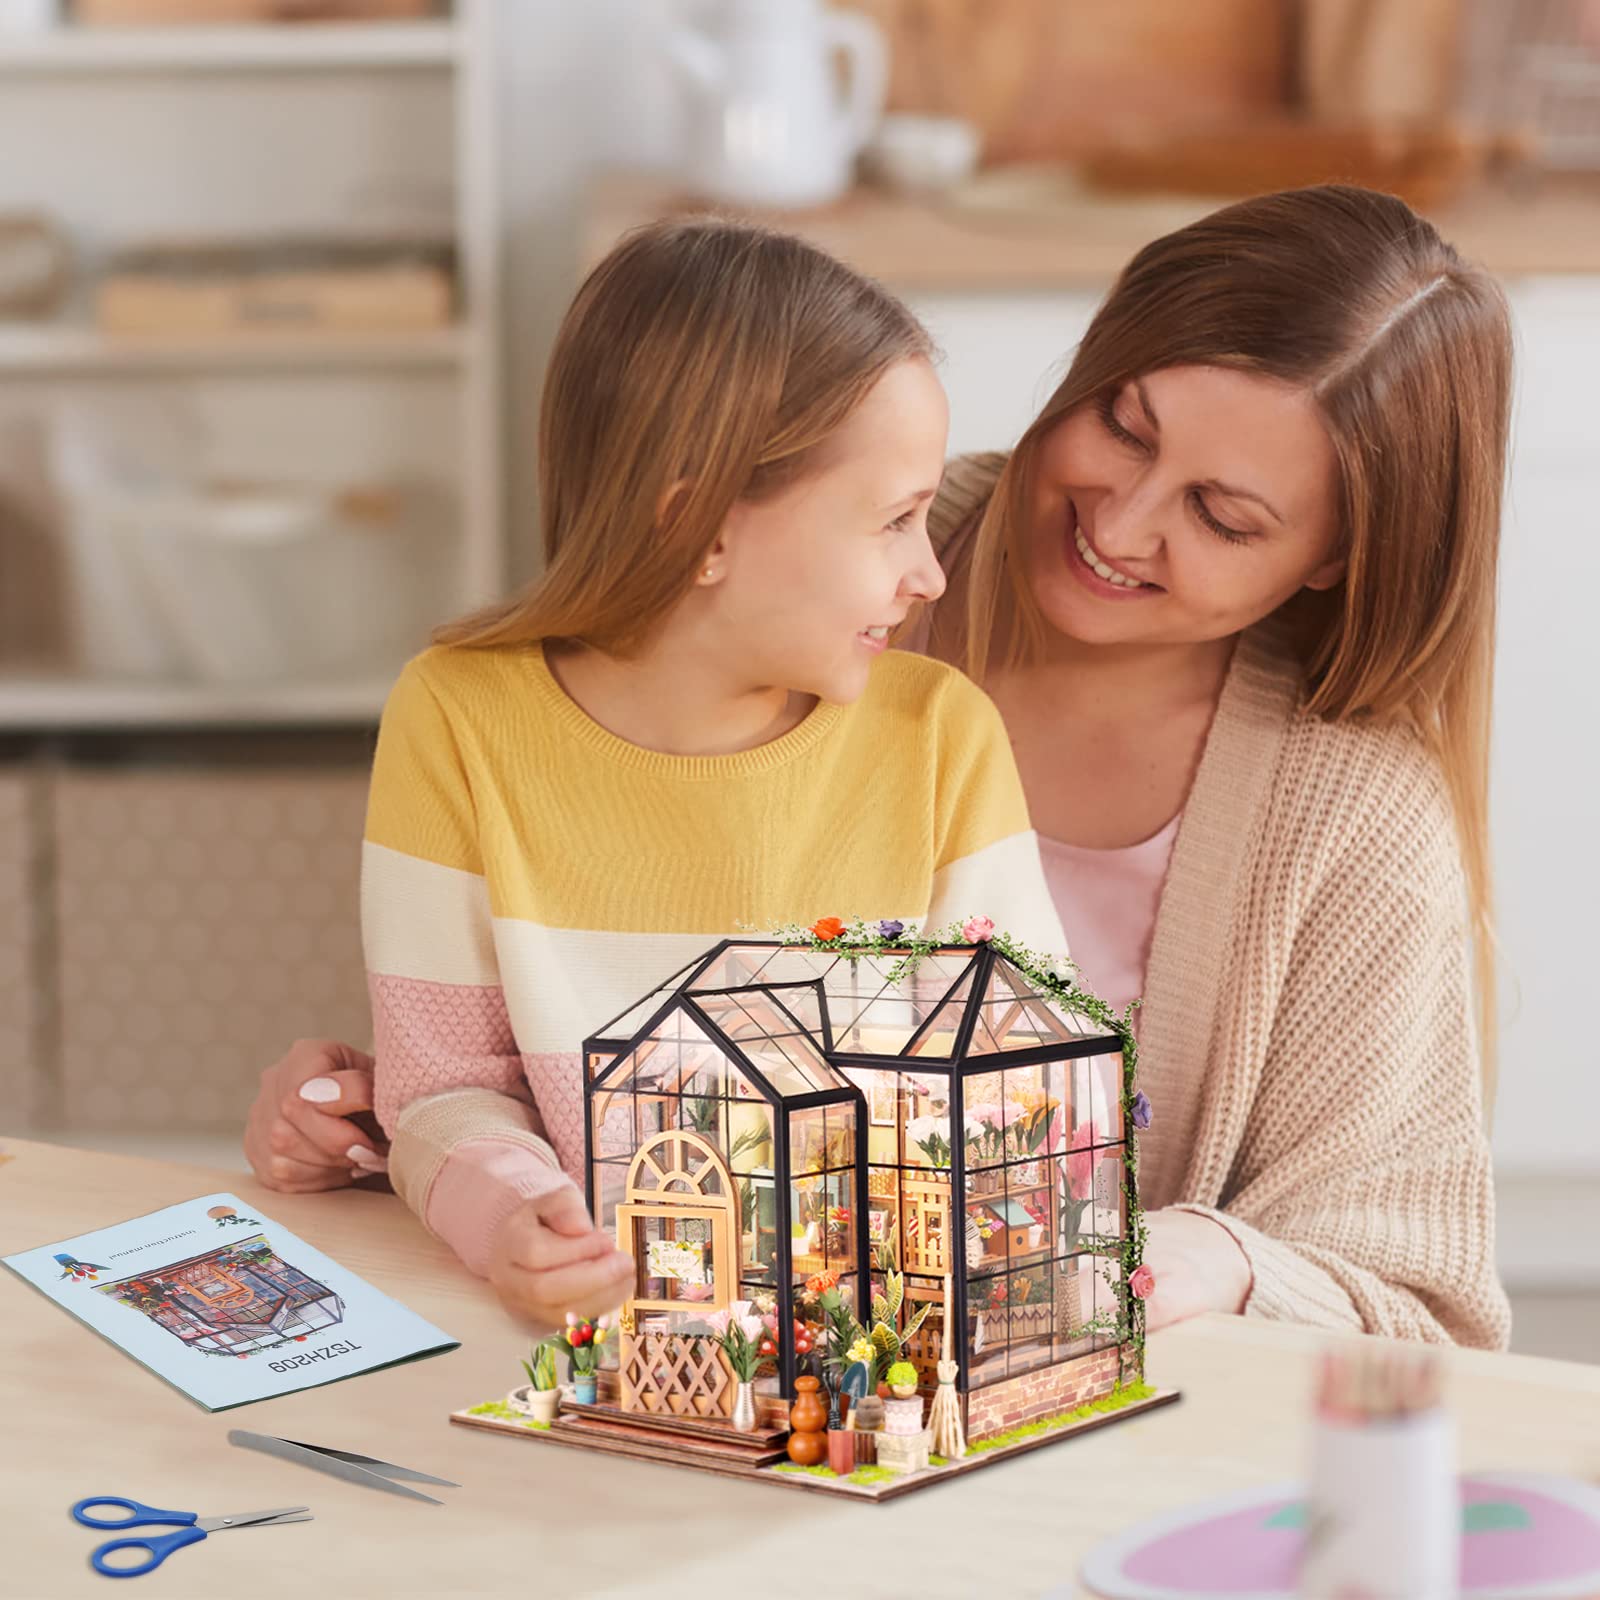 3D Miniature House Kit · Jenny Greenhouse